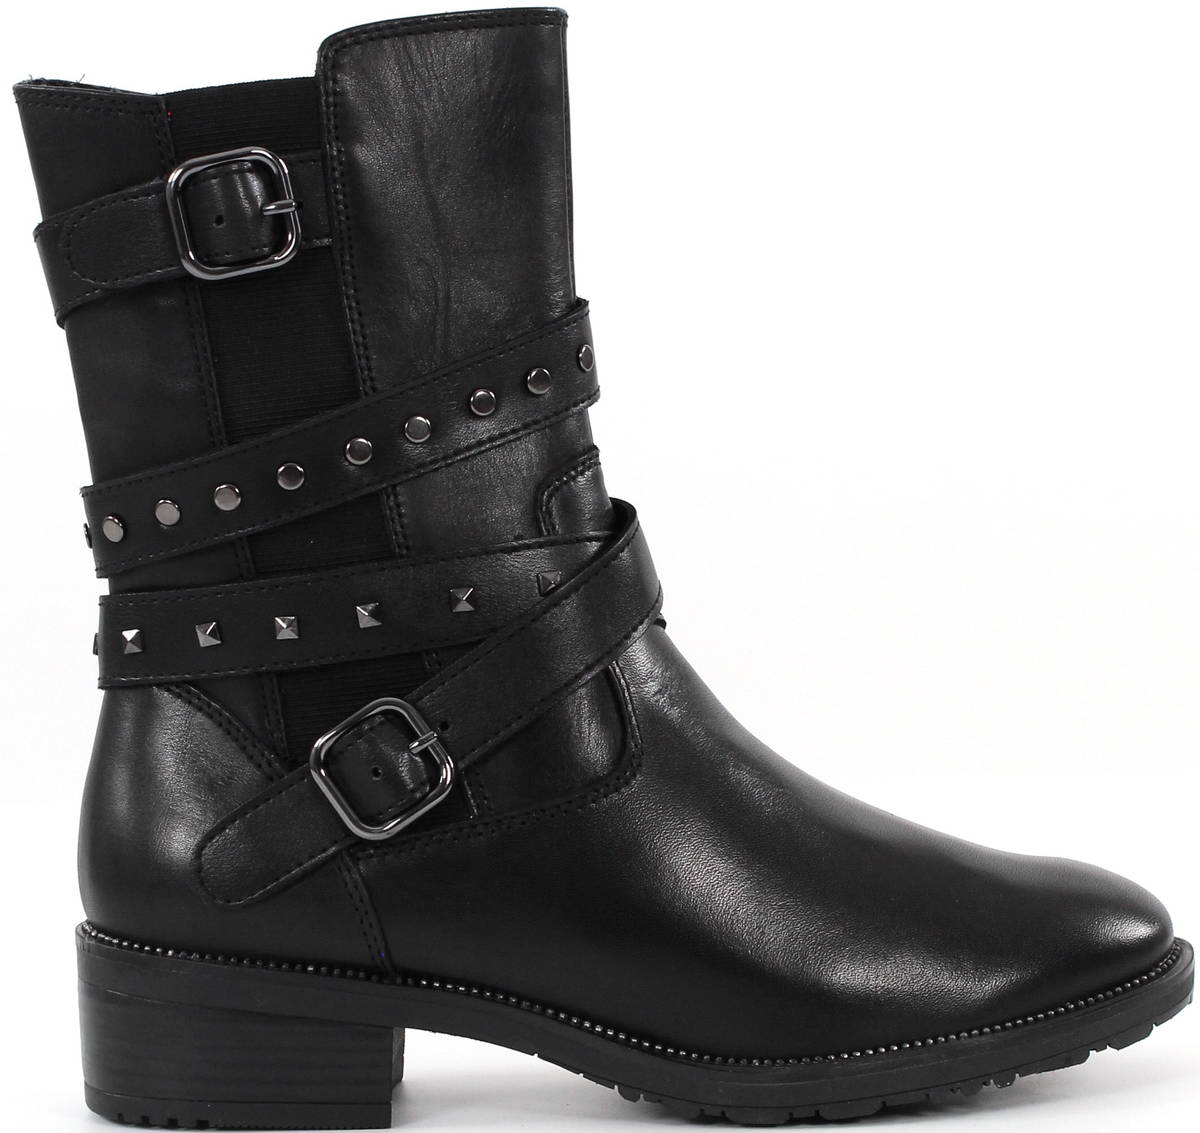 Tamaris Ankle Boots 25031-29, Black - Stilettoshop.eu webstore